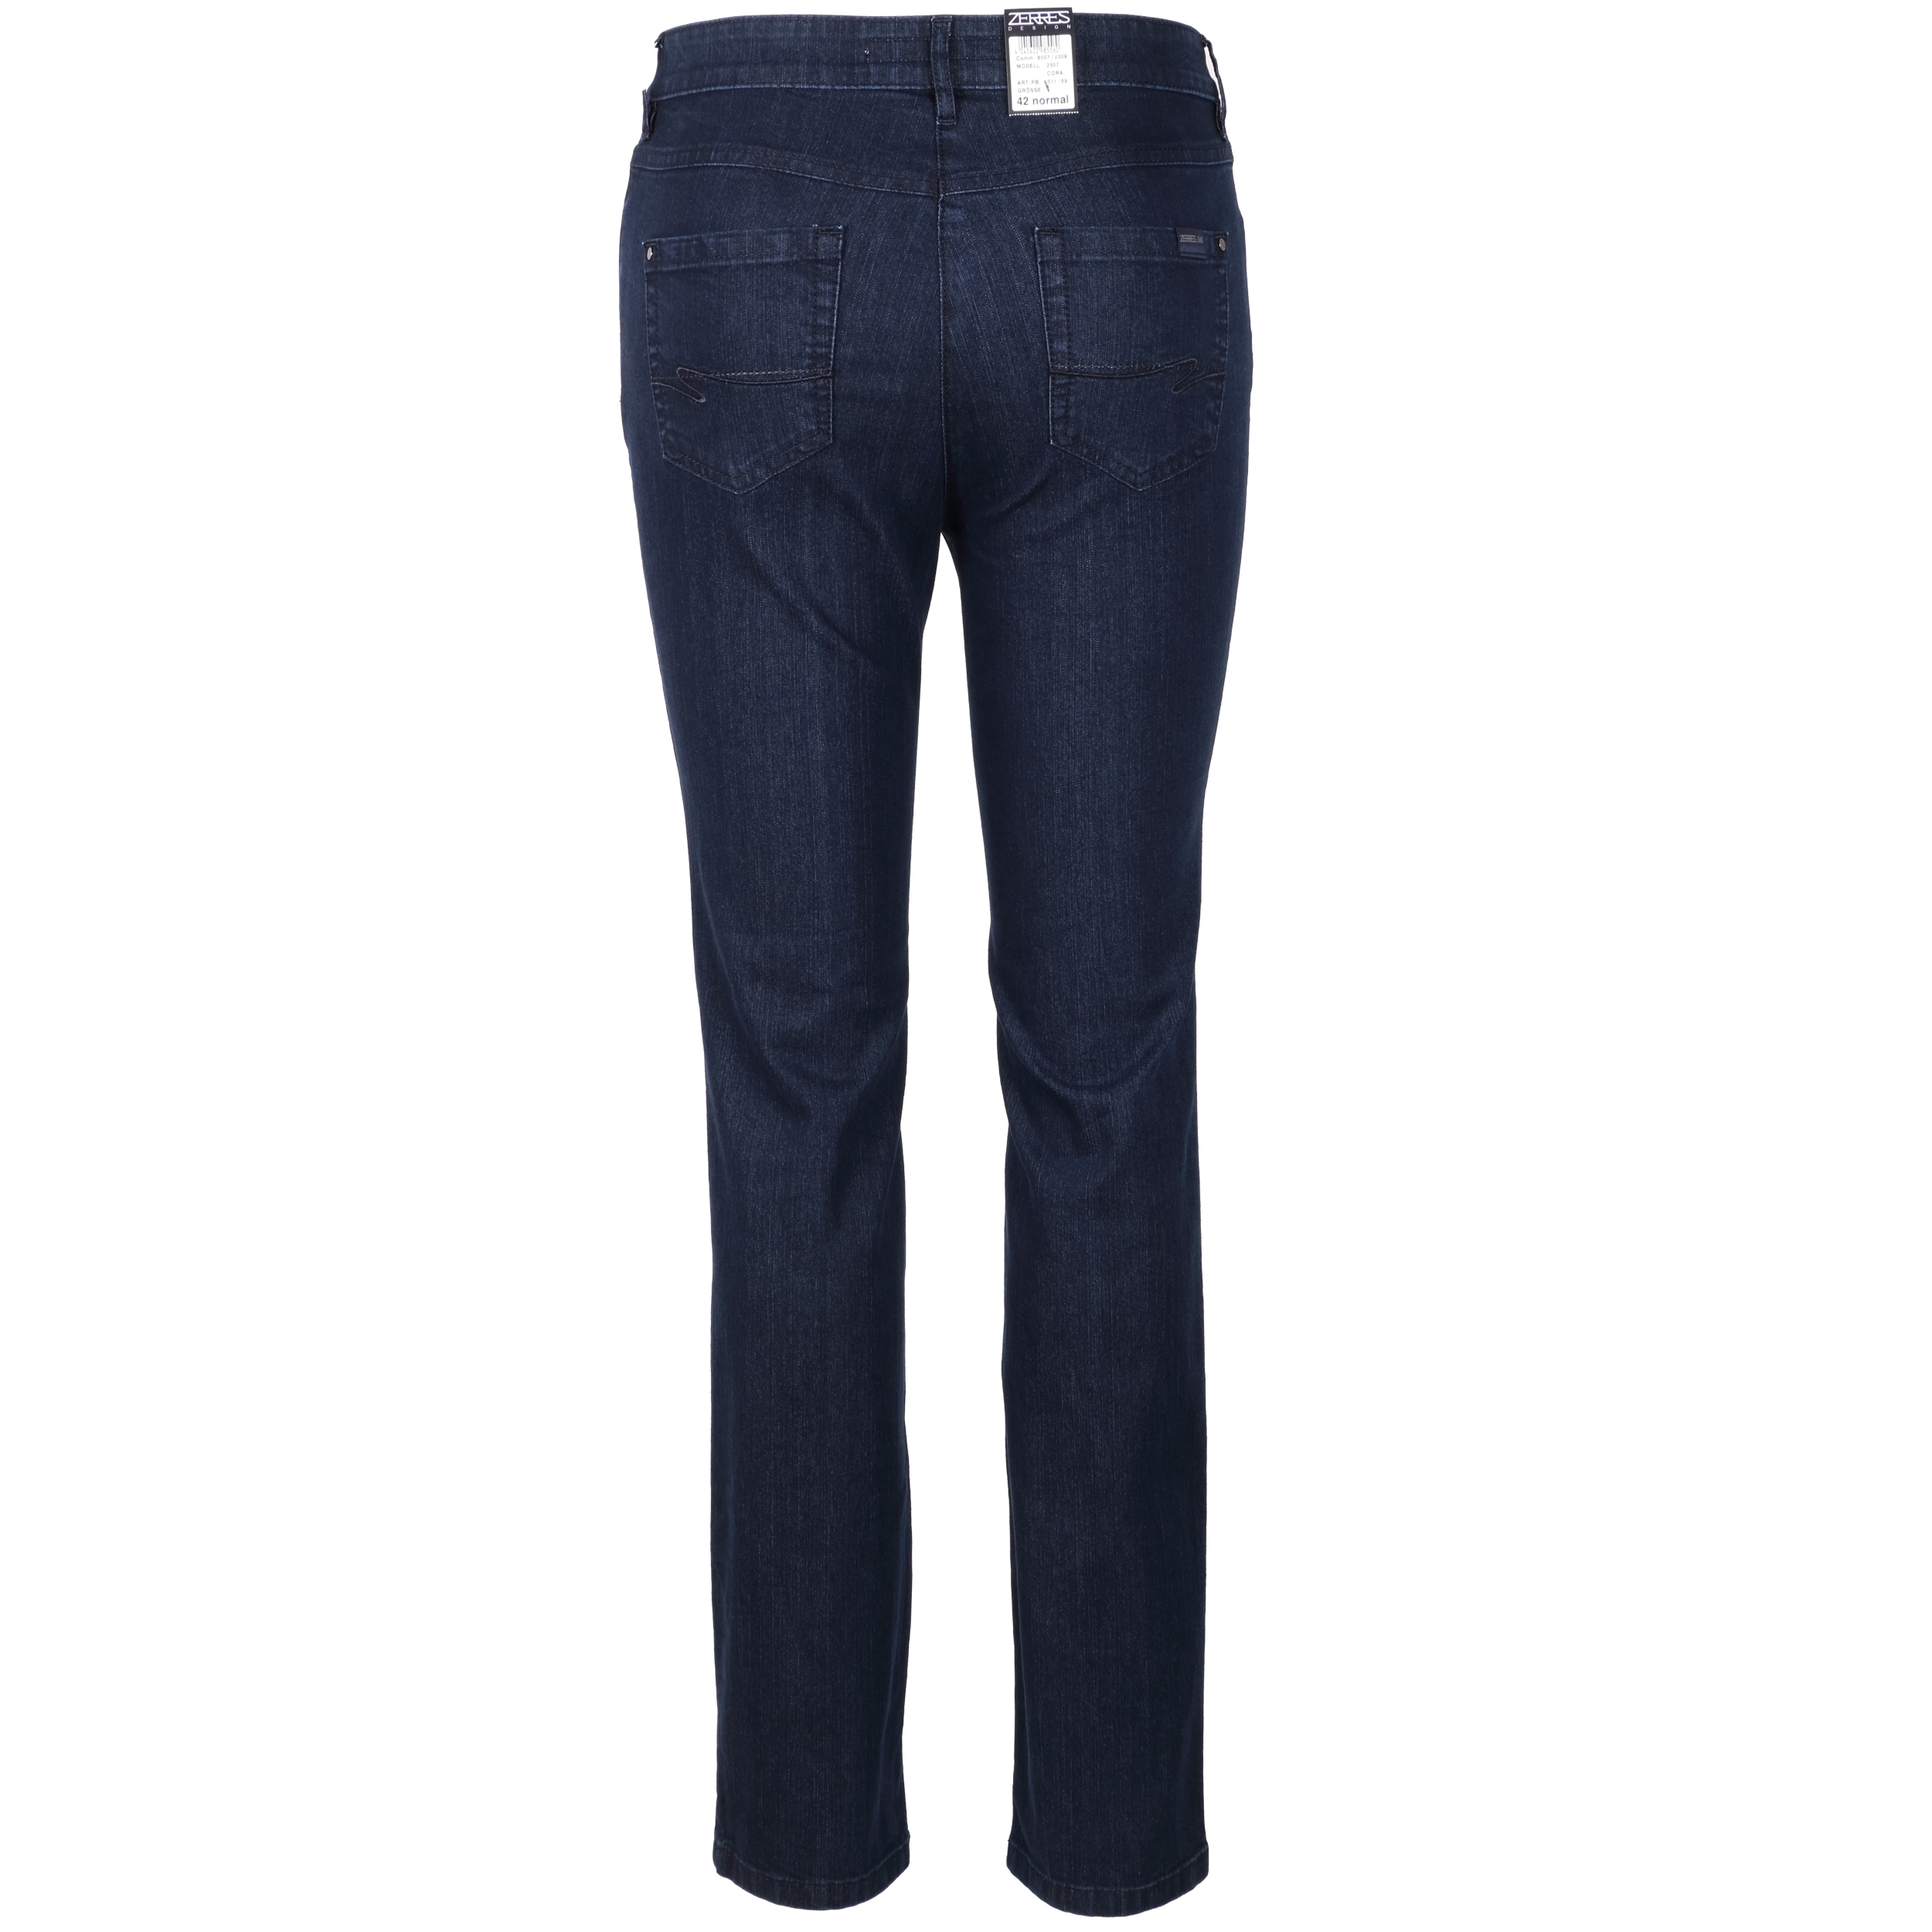 Zerres Damen Jeans Cora comfort S 21 dunkelblau